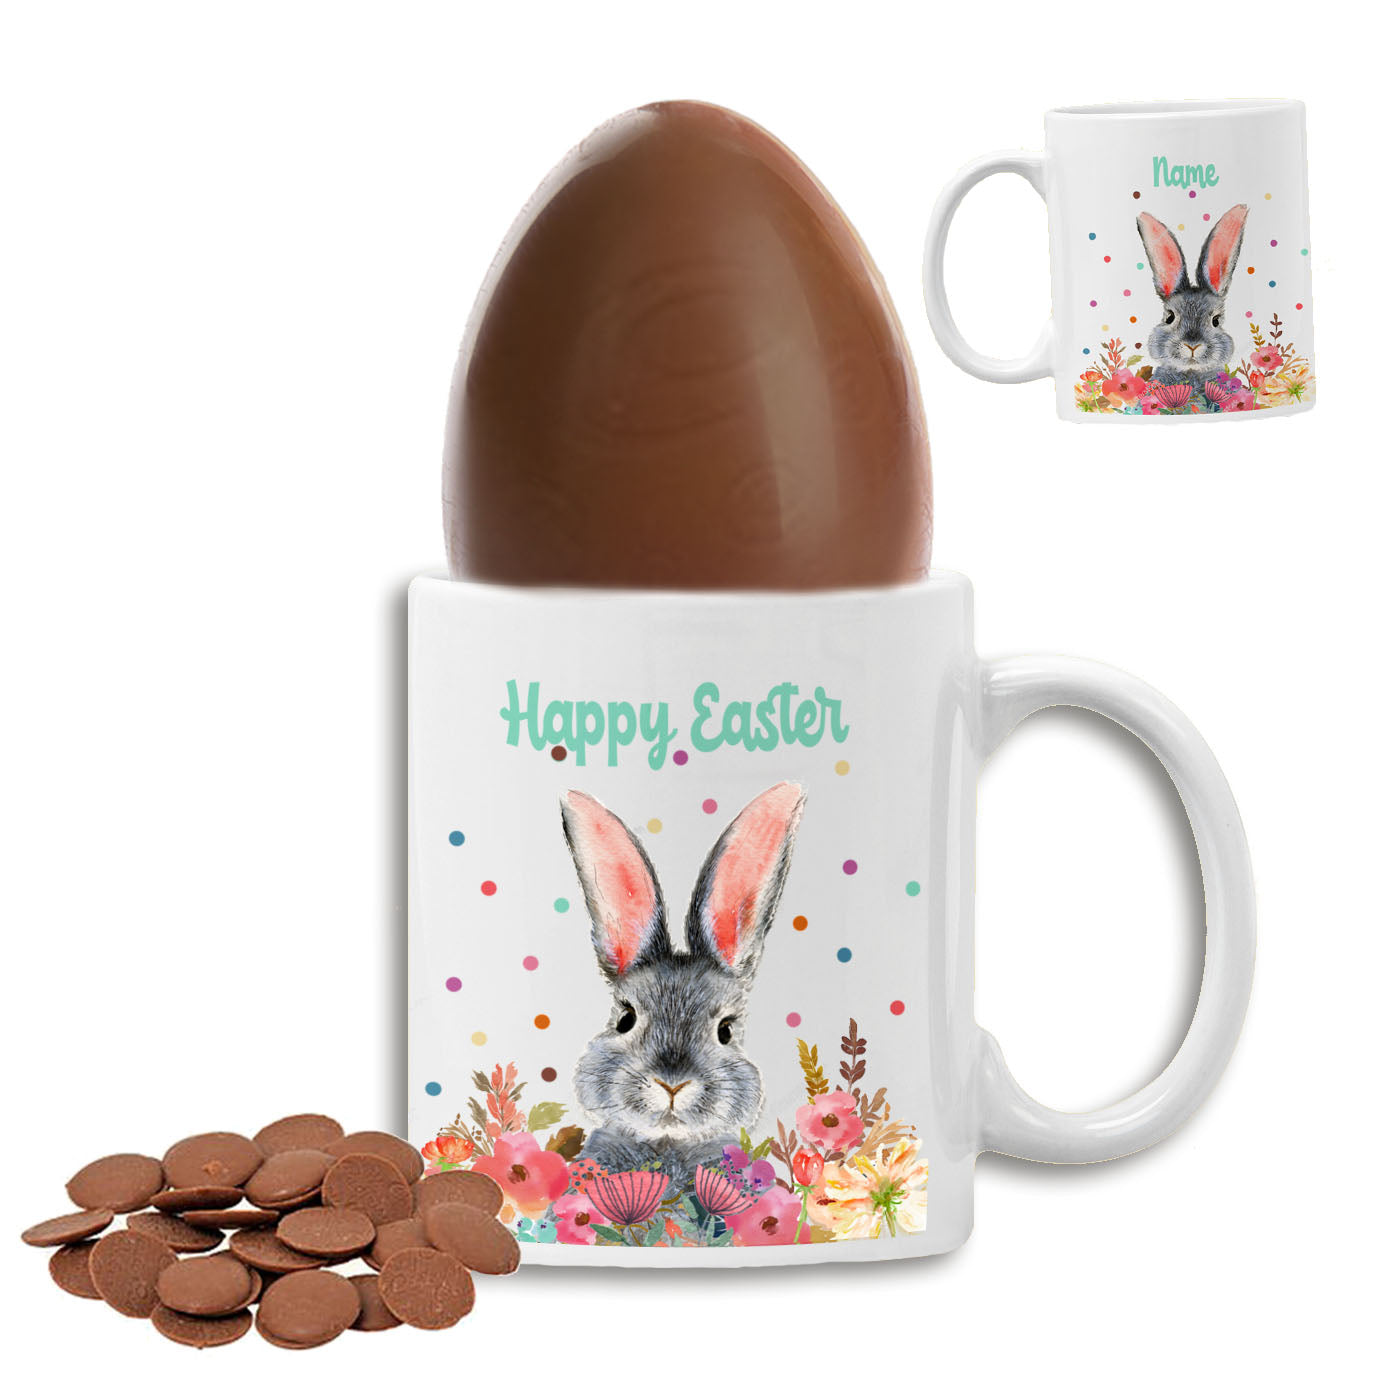 Bunnylicious Set - Personalised Easter Mug & Cadbury's Chocolate Egg